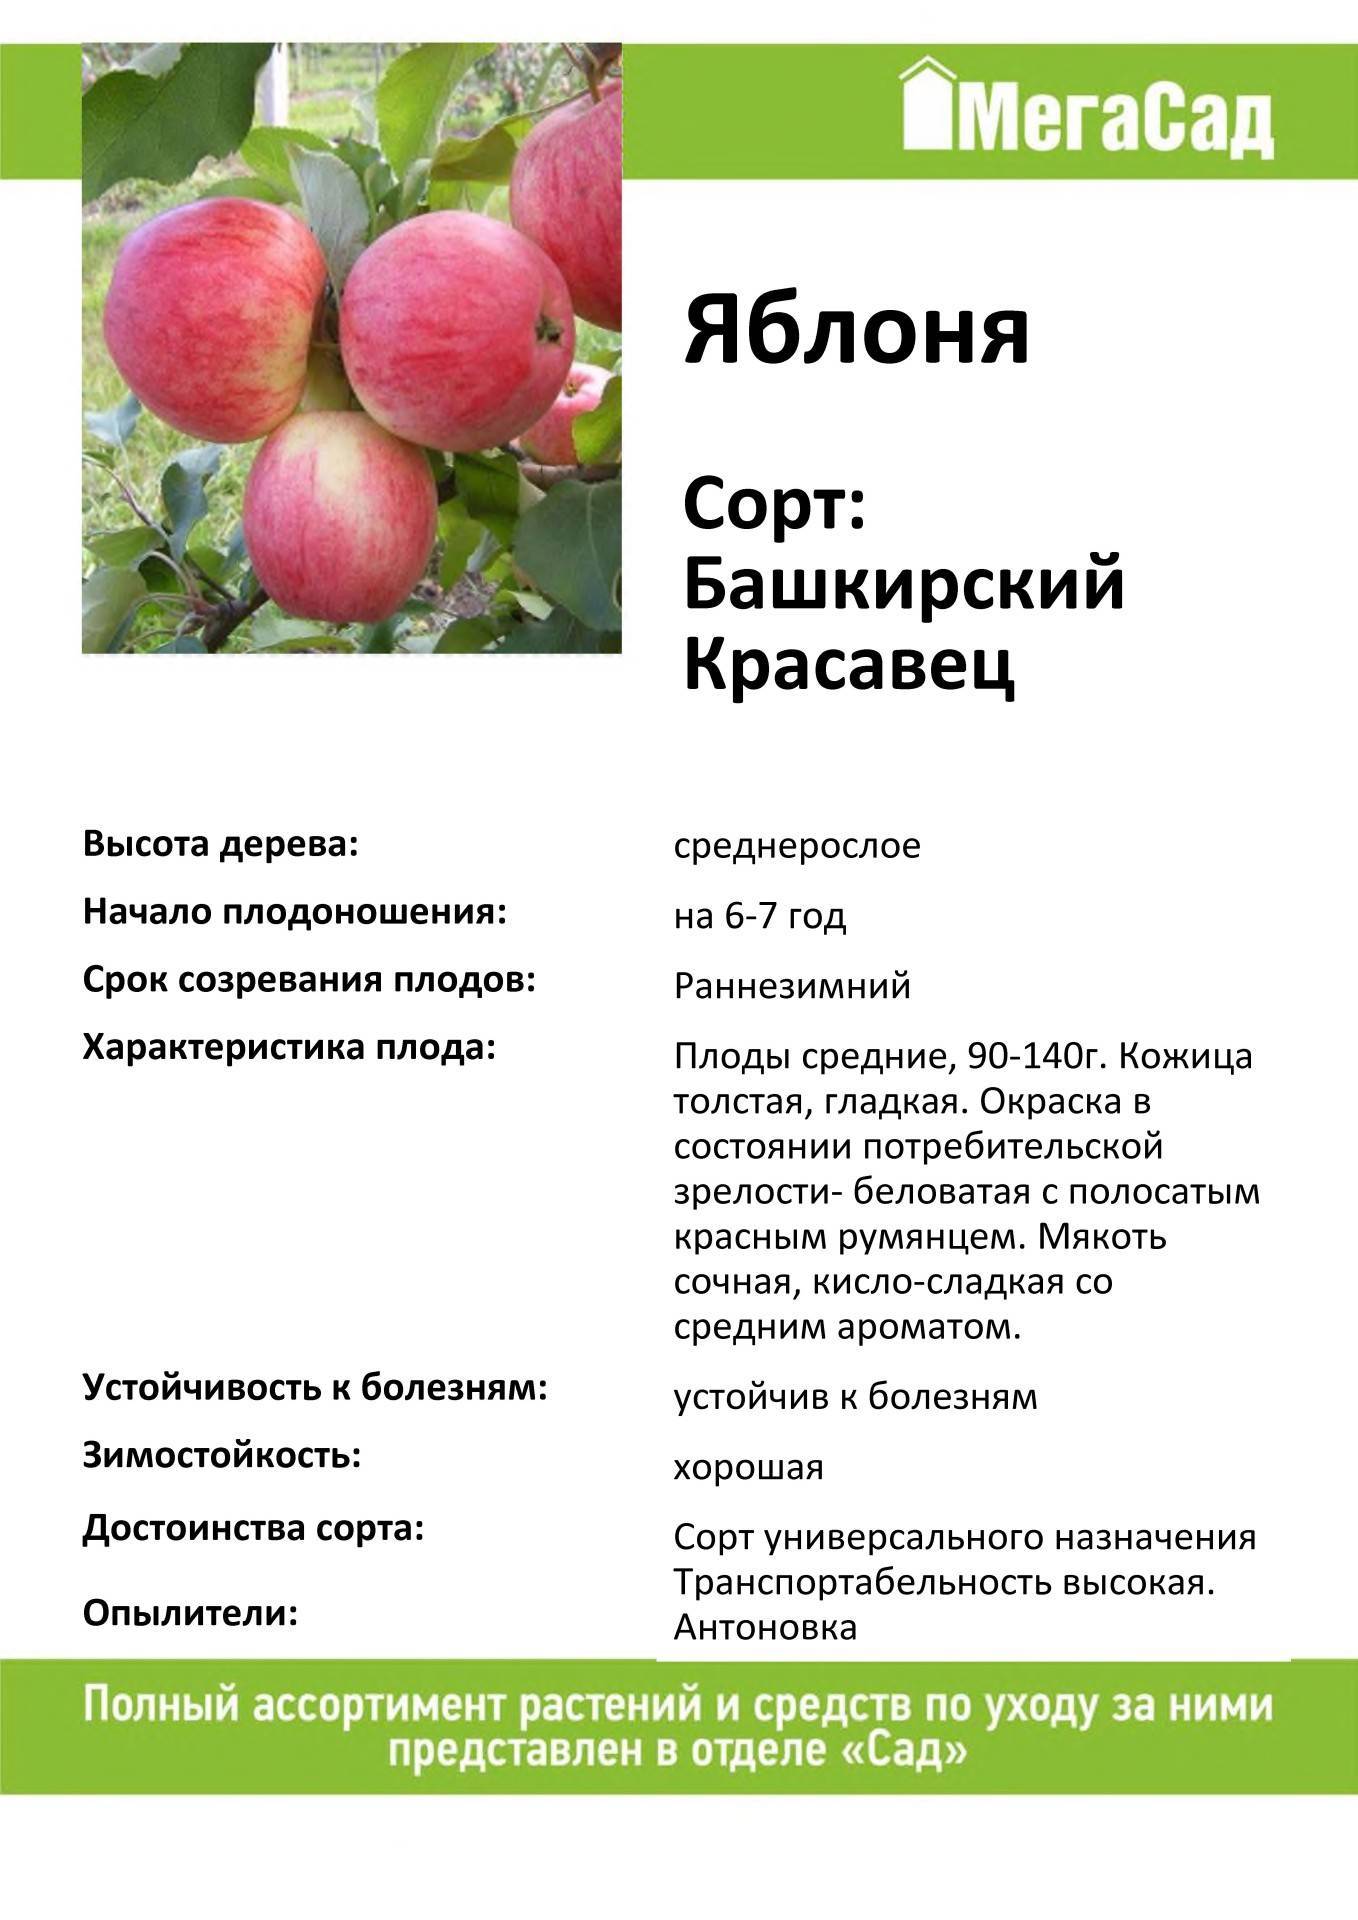 Секреты успешного выращивания яблони башкирская красавица